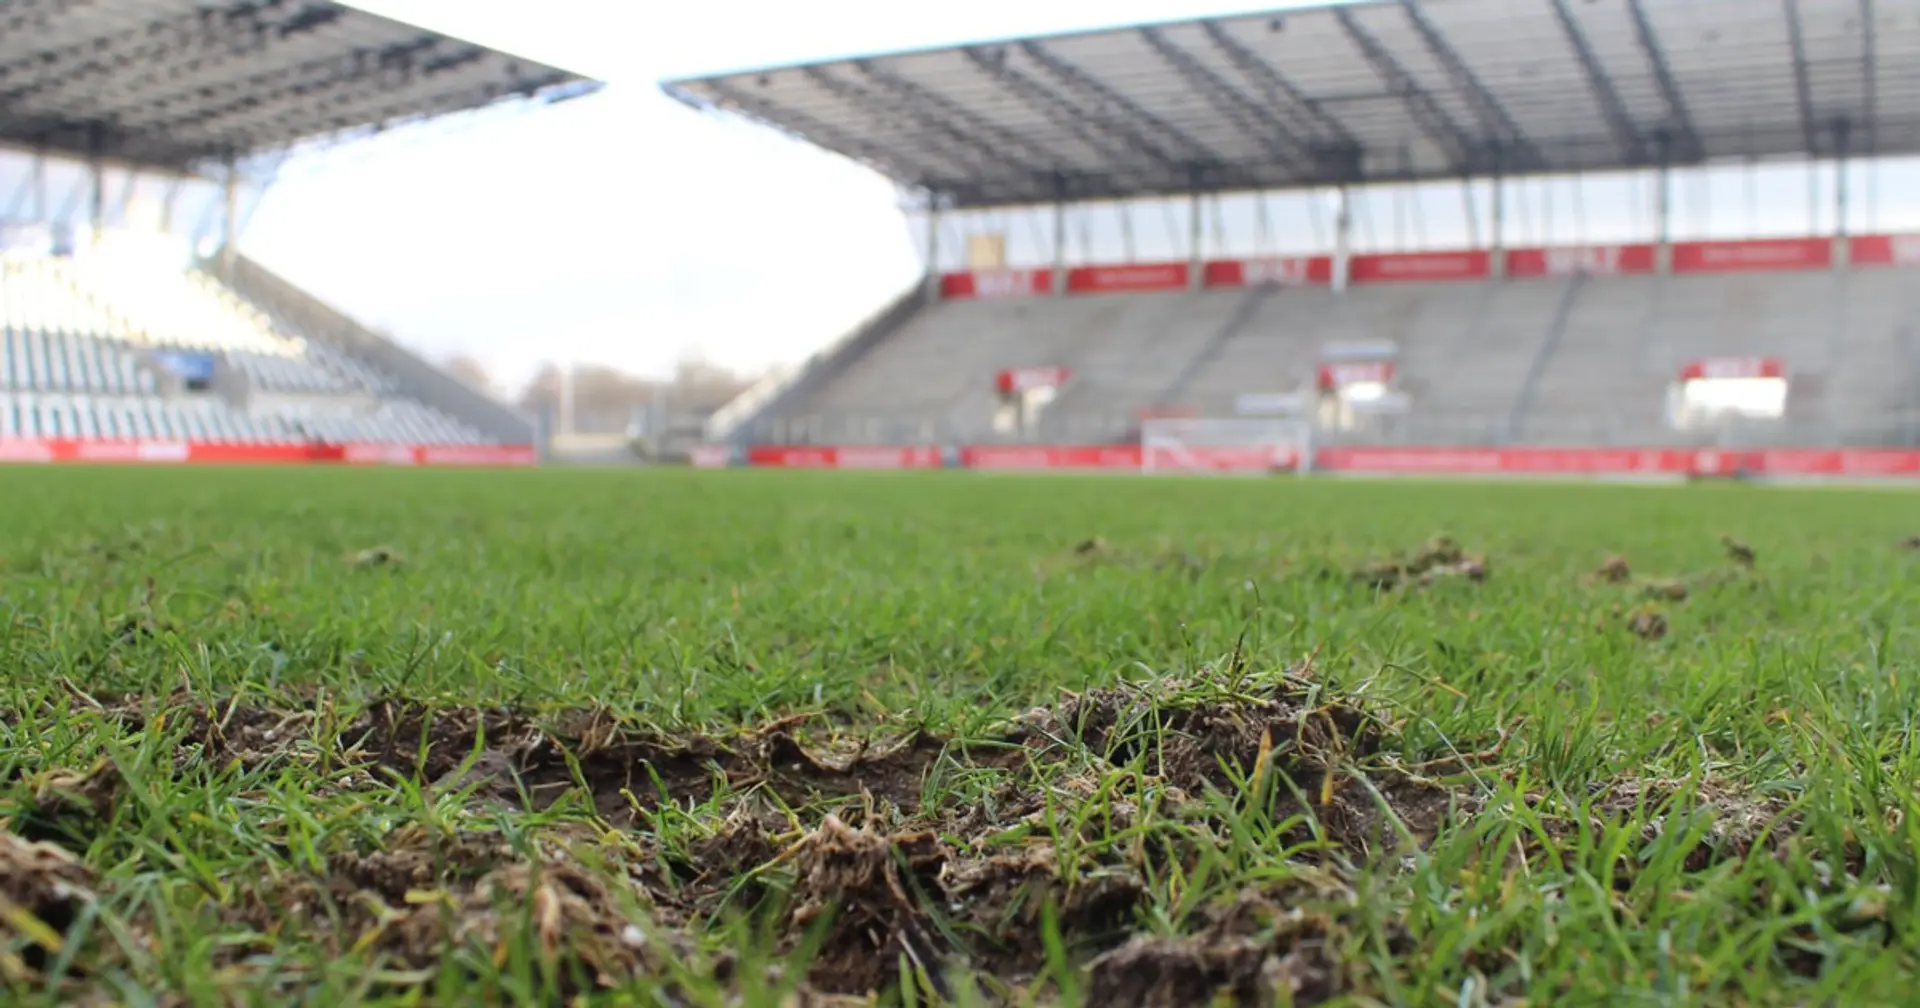 OFFIZIELL: BVB-U23 wird gegen Rot-Weiss Essen aufgrund der Unbespielbarkeit des Platzes nicht spielen